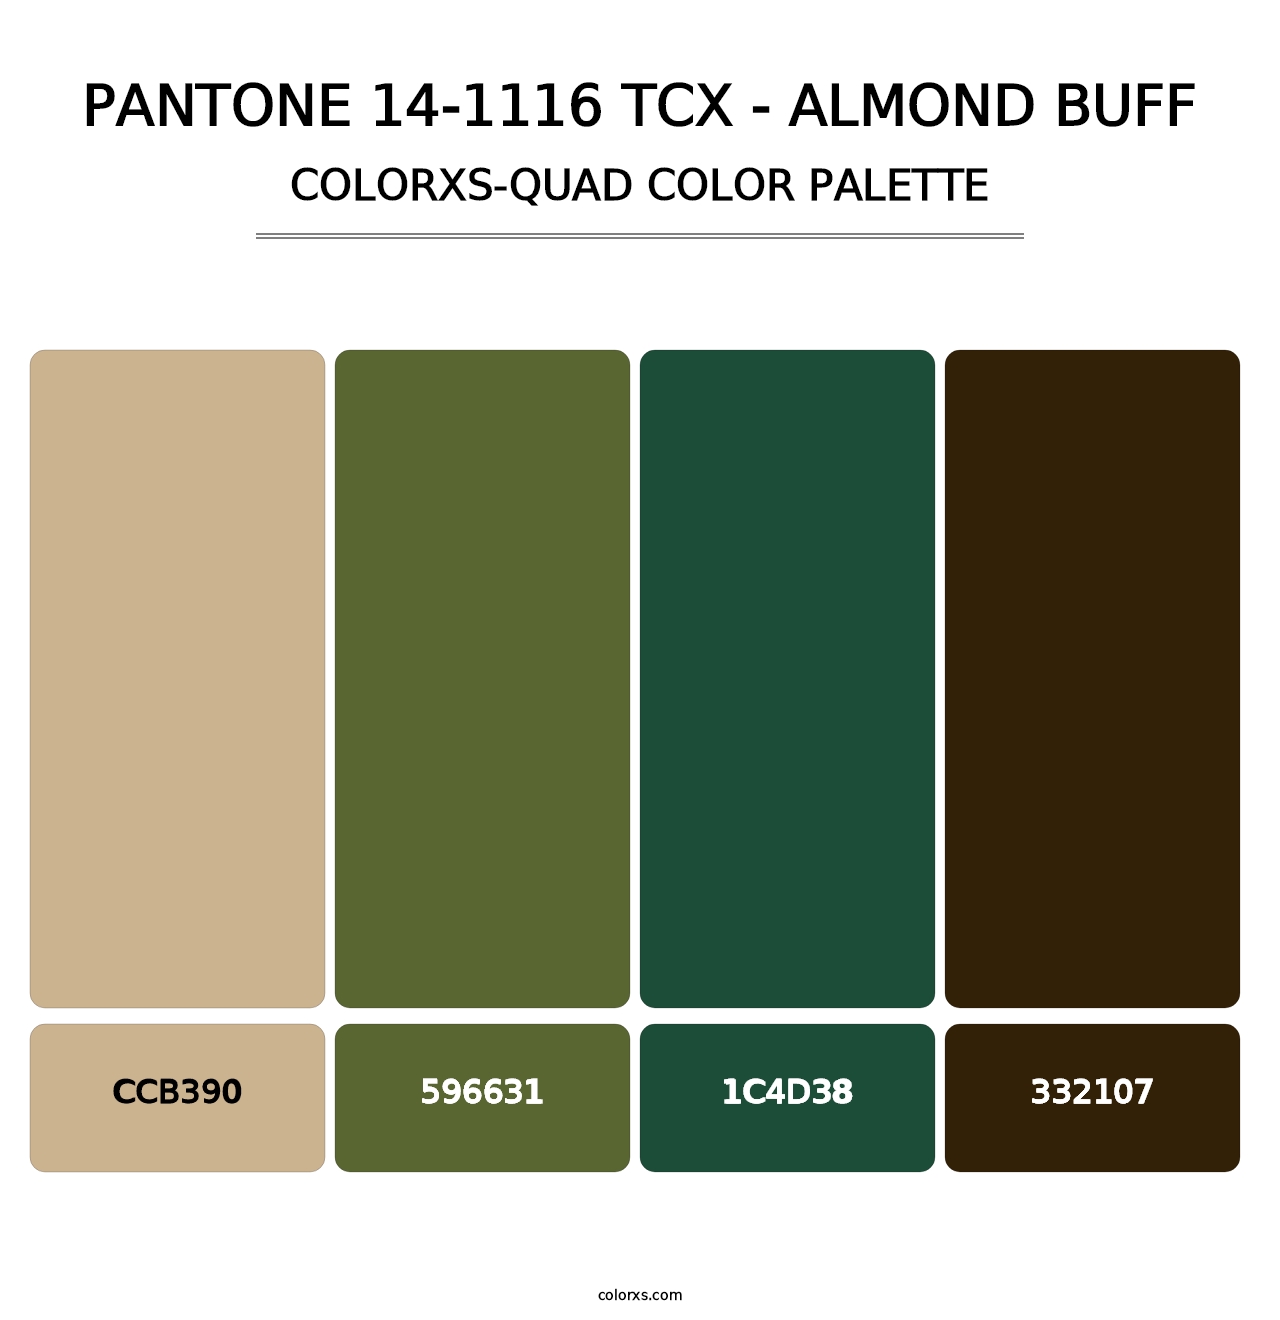 PANTONE 14-1116 TCX - Almond Buff - Colorxs Quad Palette